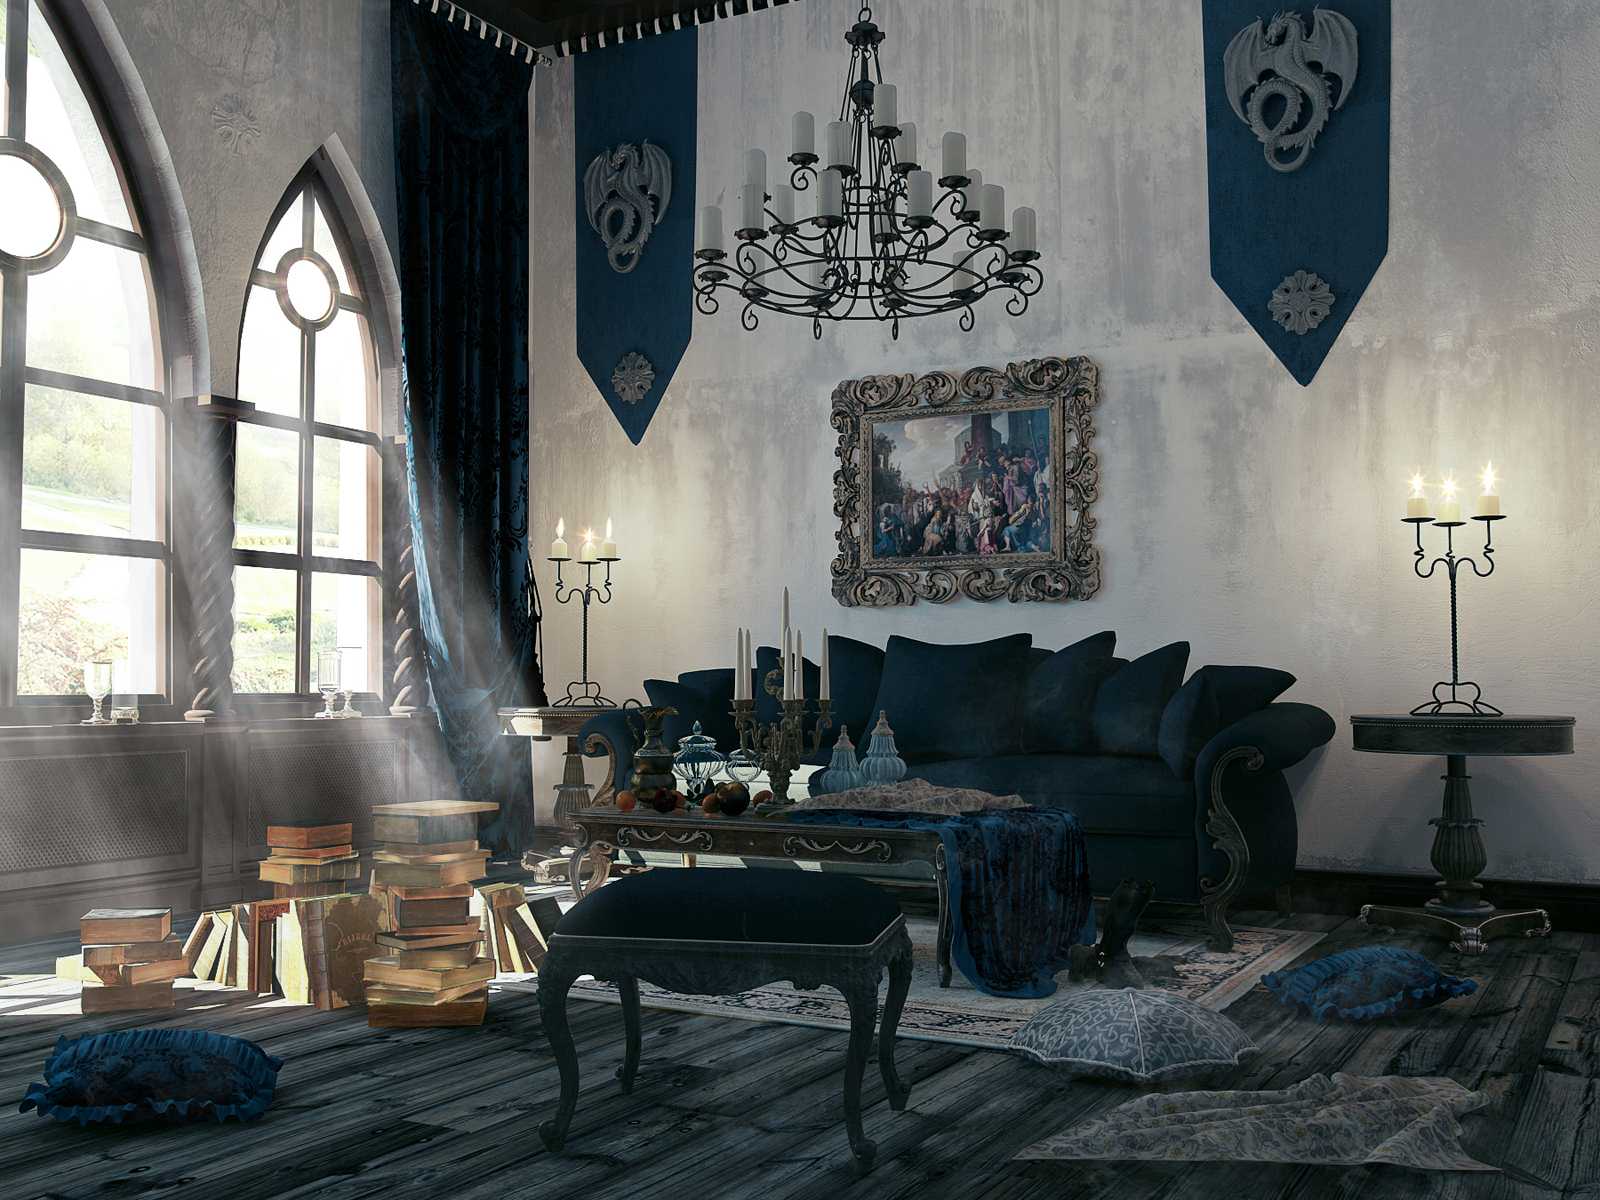 soba svijetle boje u gotičkom stilu